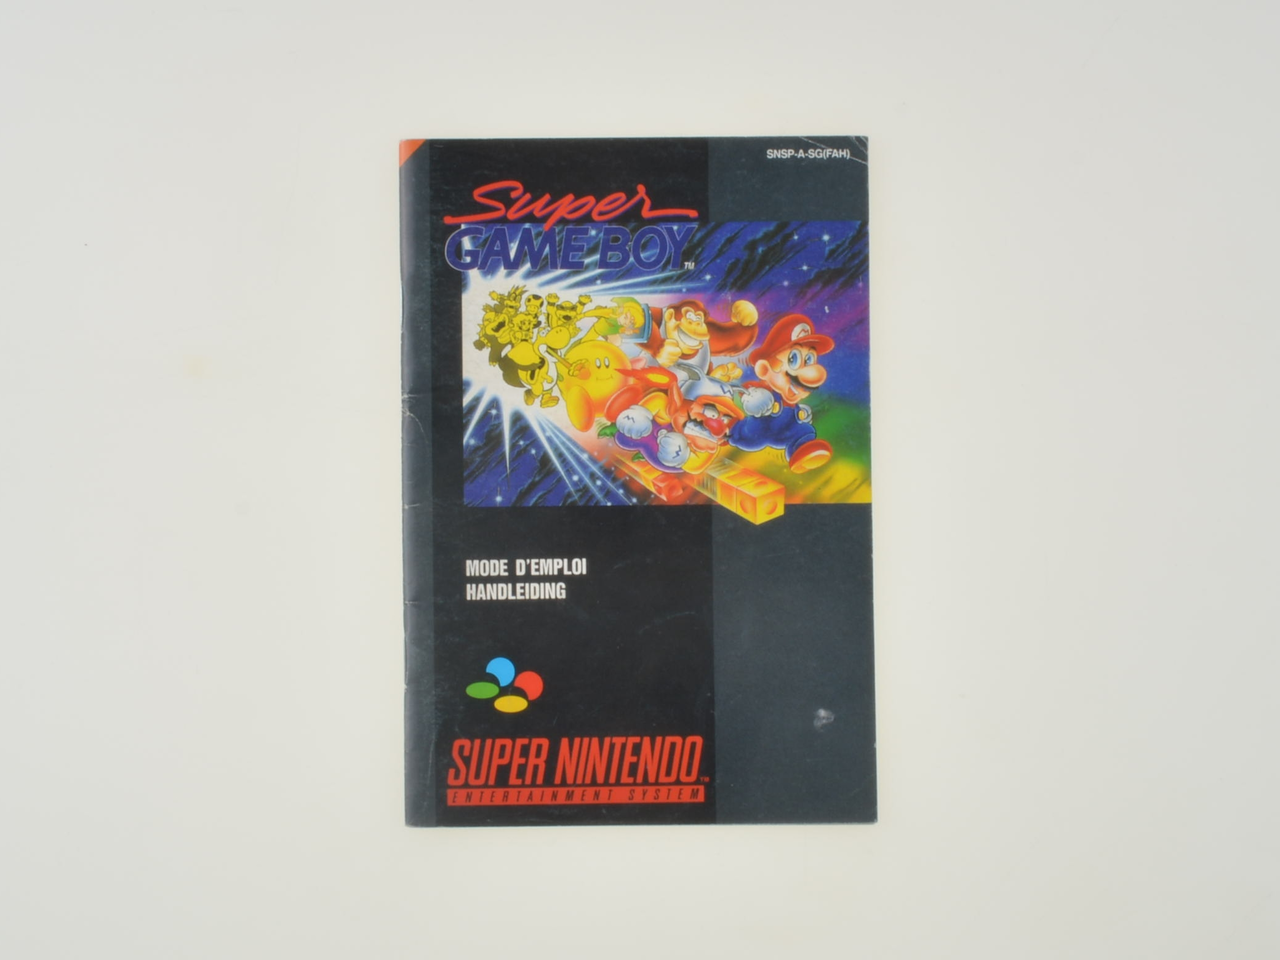 Super Gameboy - Manual - Super Nintendo Manuals